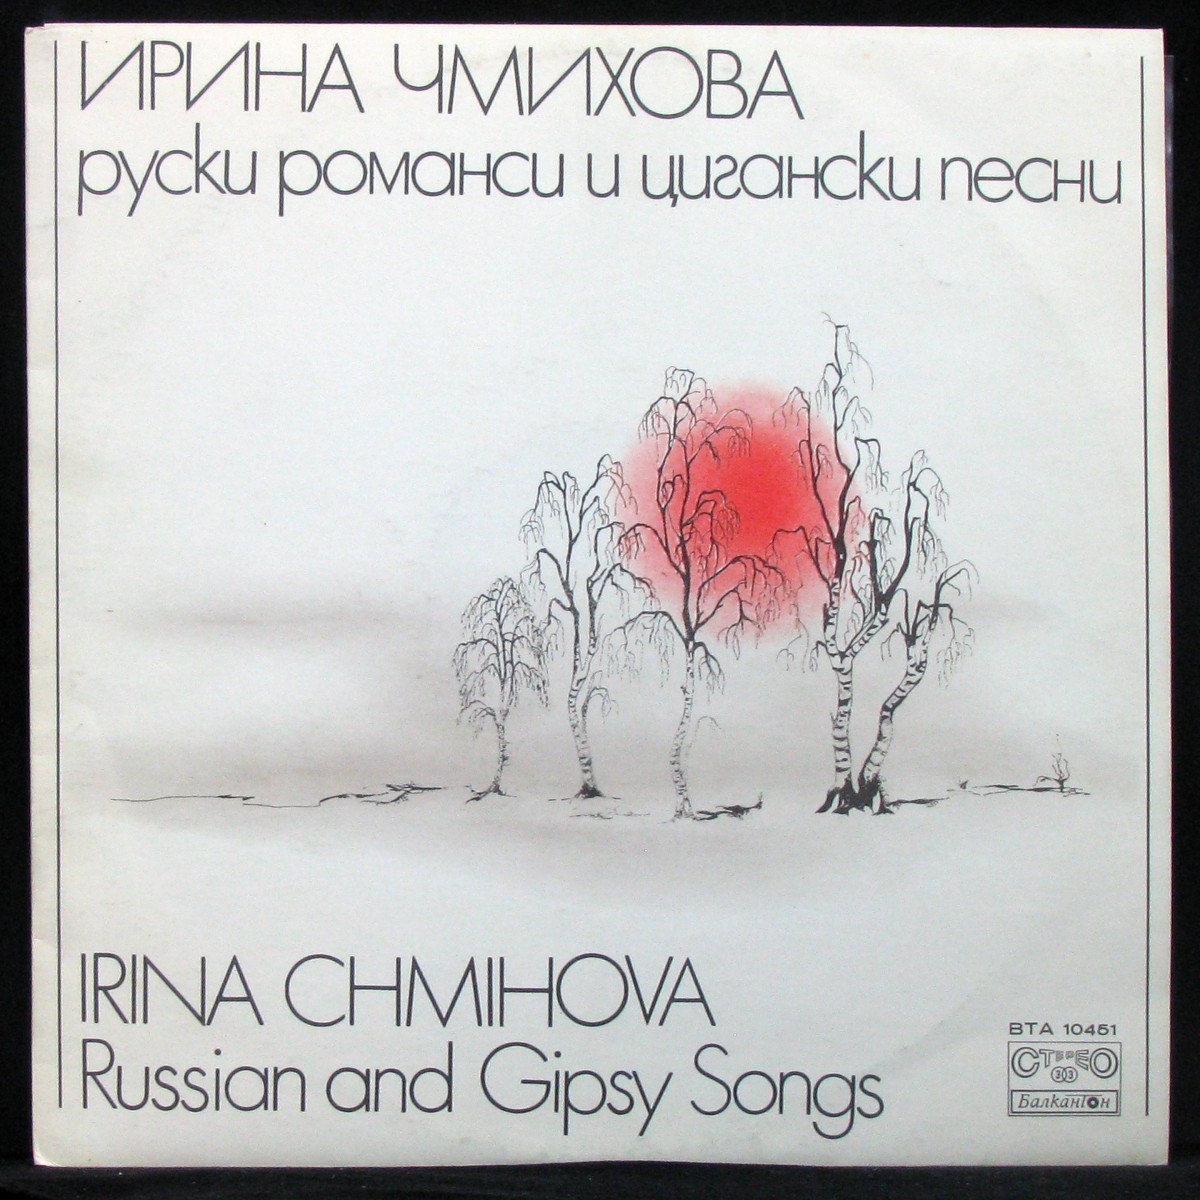 LP Ирина Чмихова — Русские романсы и цыганские песни фото